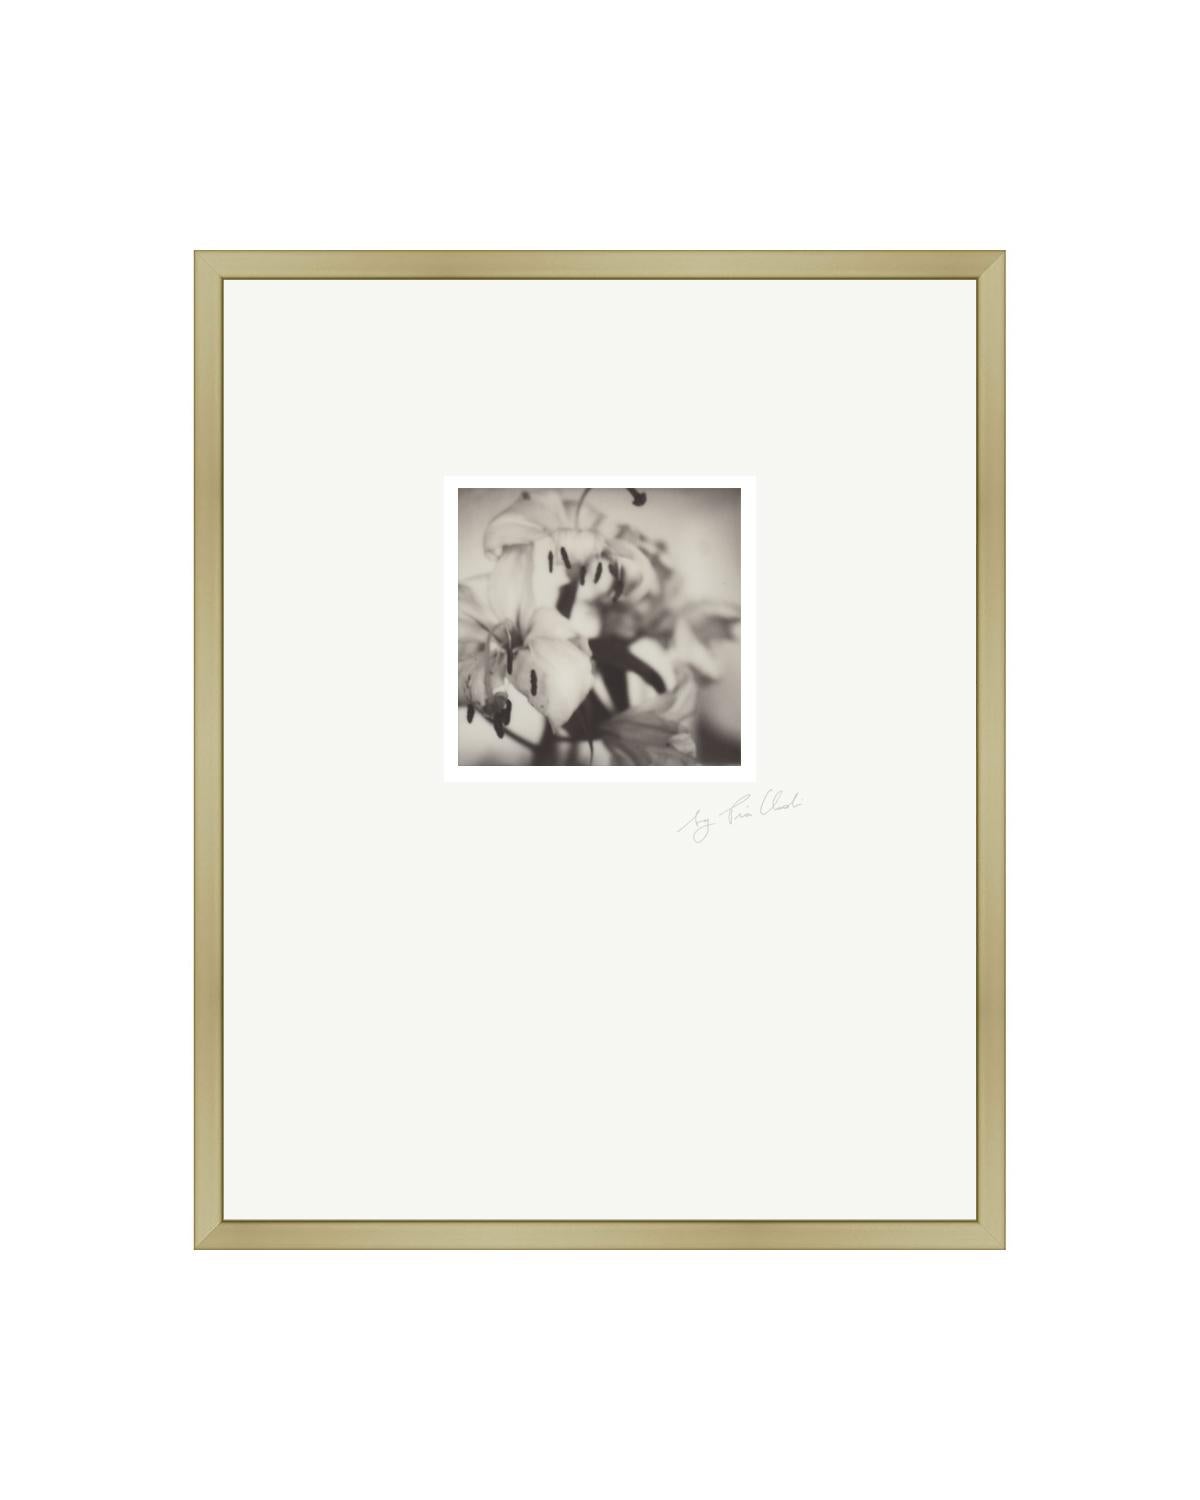 Black and White Photograph Pia Clodi - Past Bloom III - Photographie Polaroid contemporaine noire et blanche d'origine encadrée